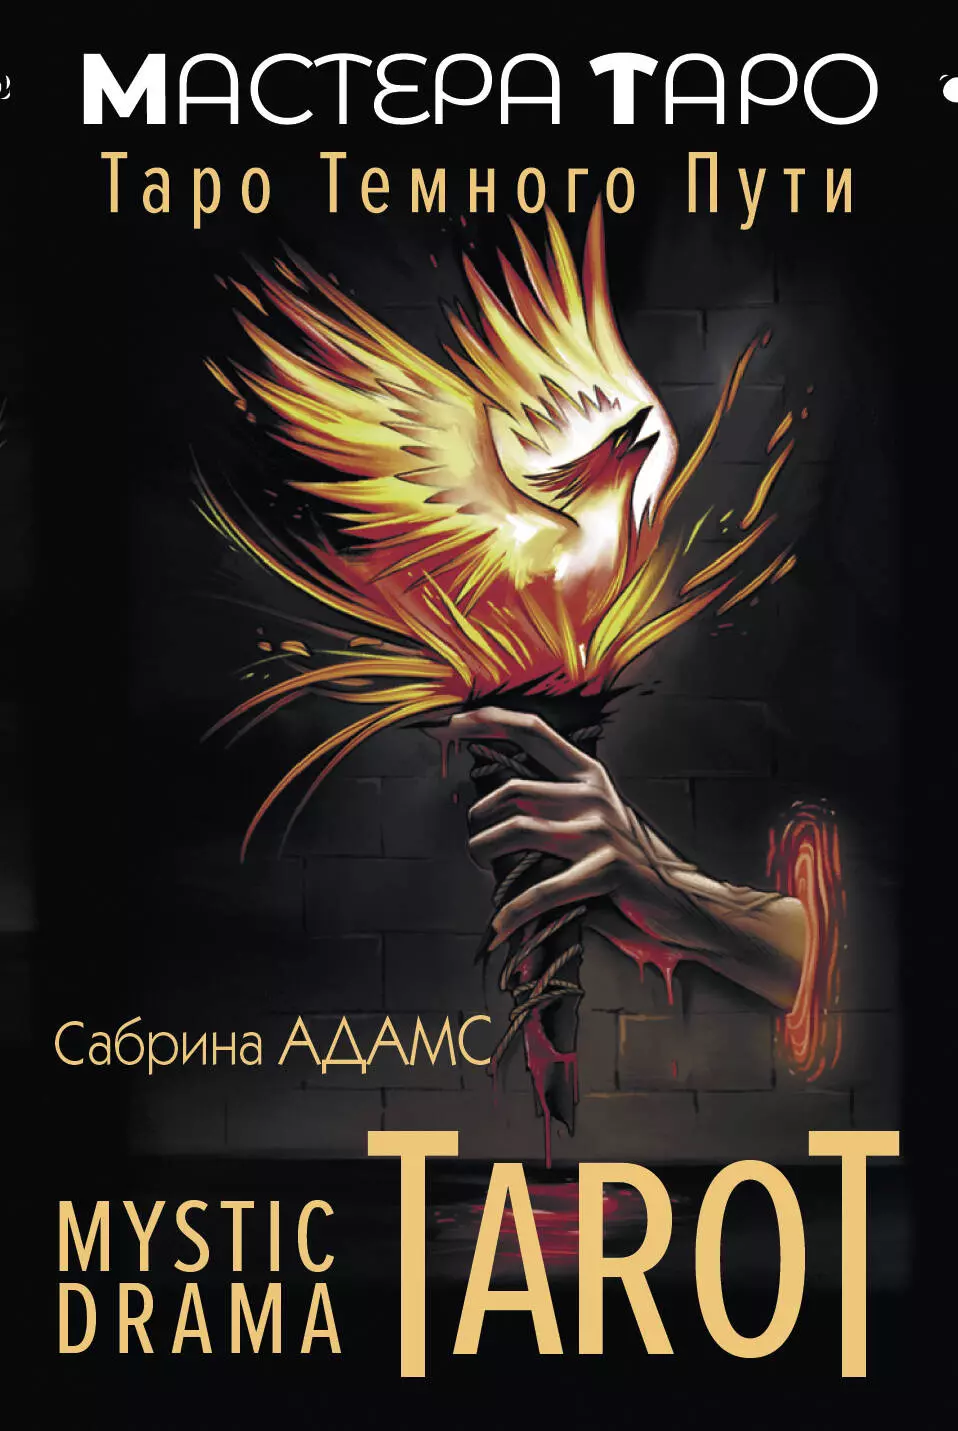 Mystic Drama Tarot. Таро темного пути (78 карт и руководство)